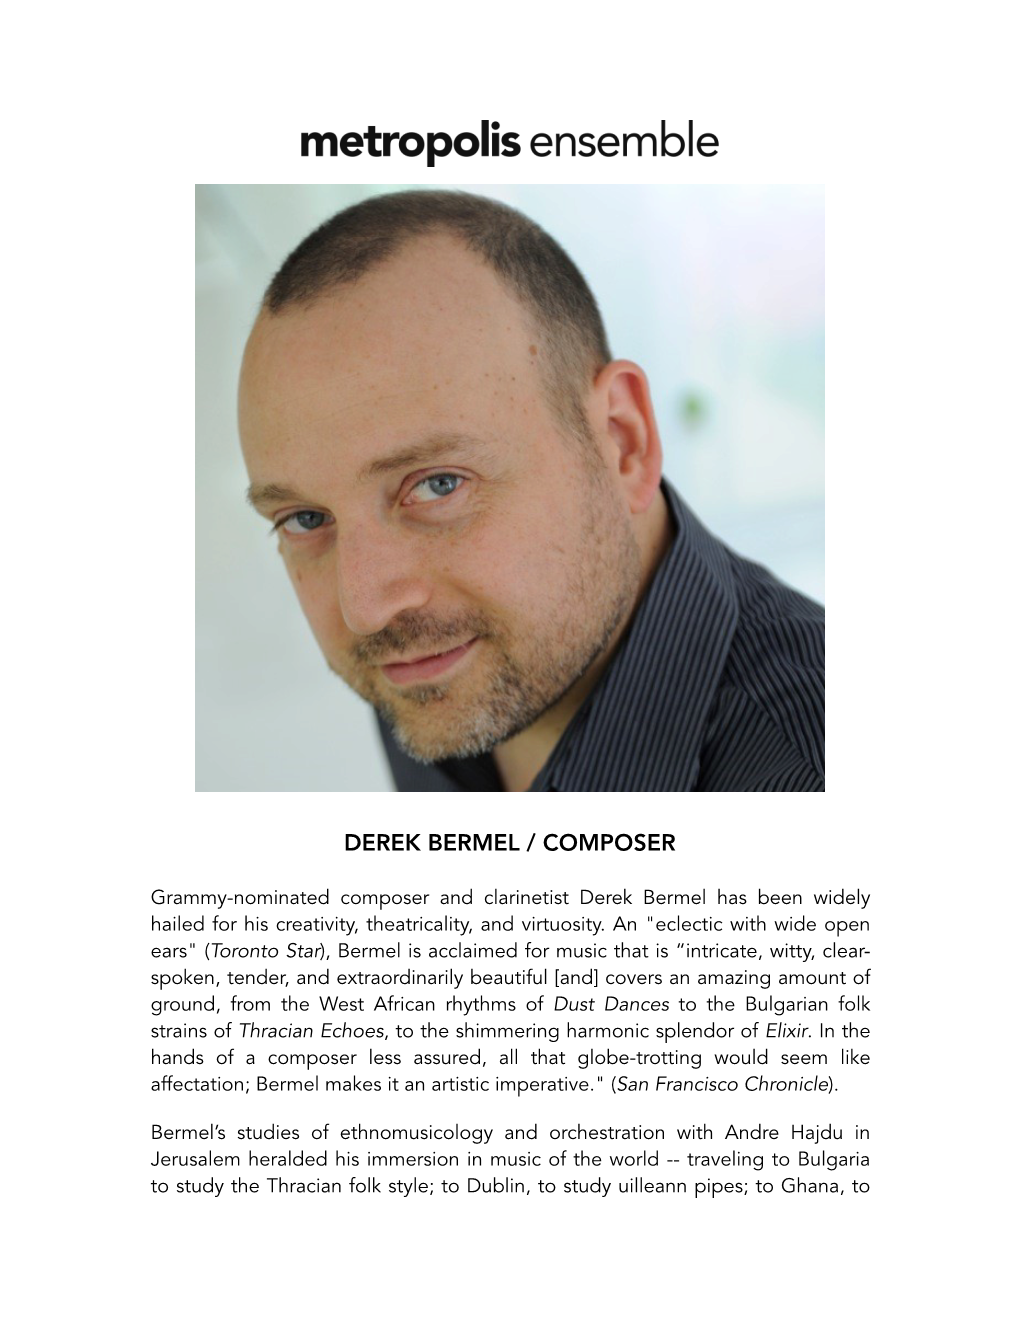 Derek Bermel / Composer